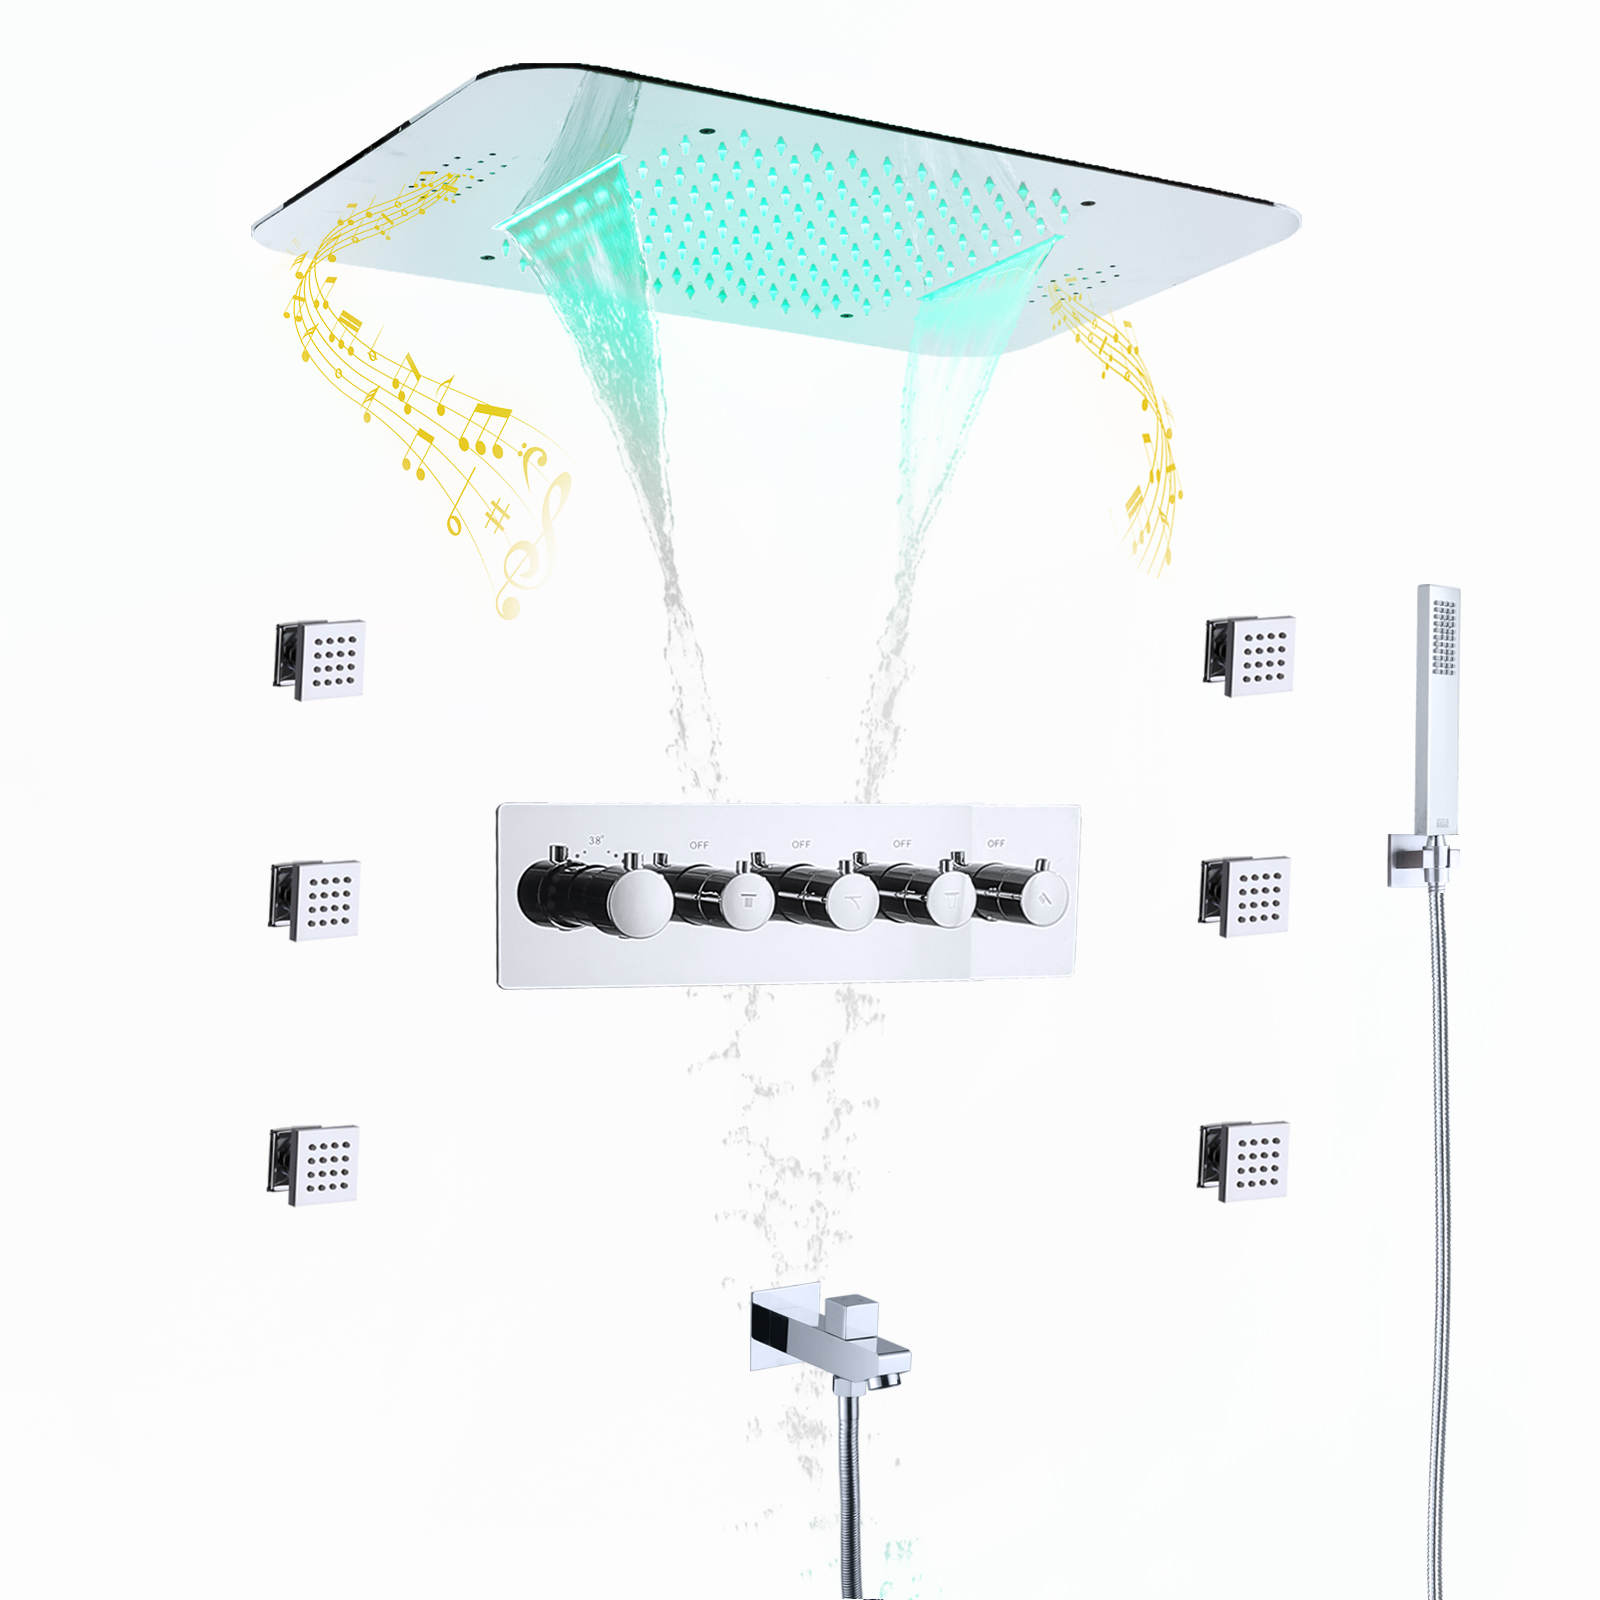 Cabezal de ducha con música LED integrado en el techo, juego de grifo de ducha con cuerpo principal de agua fría y caliente de lluvia y cascada de 580x380mm